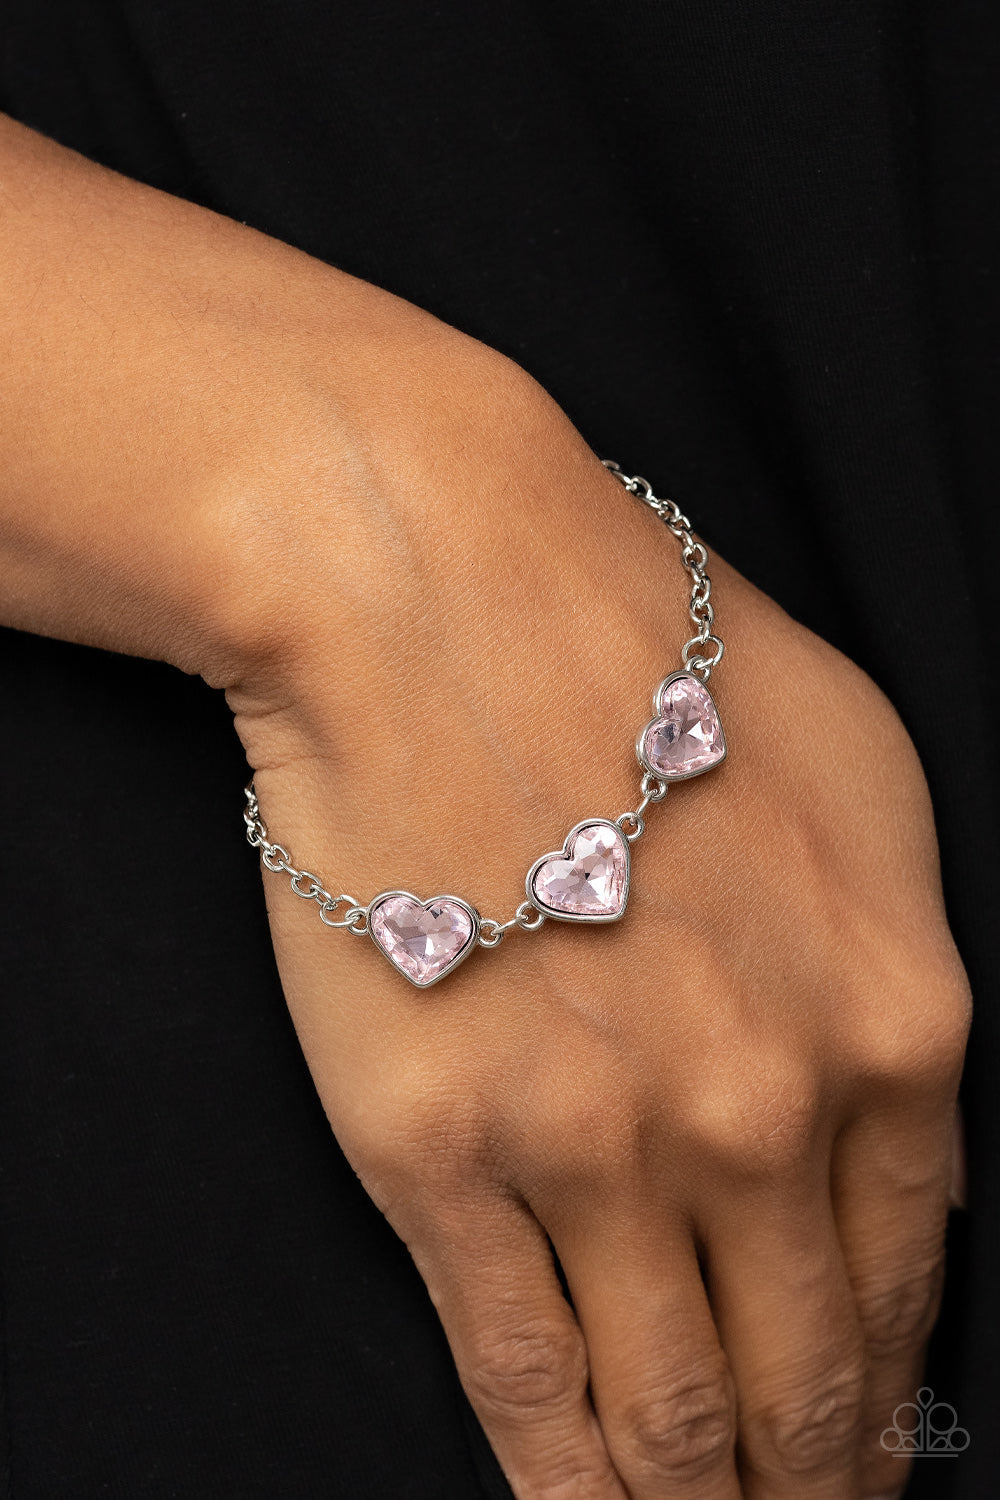 PRE-ORDER - Paparazzi Little Heartbreaker - Pink - Bracelet - $5 Jewelry with Ashley Swint